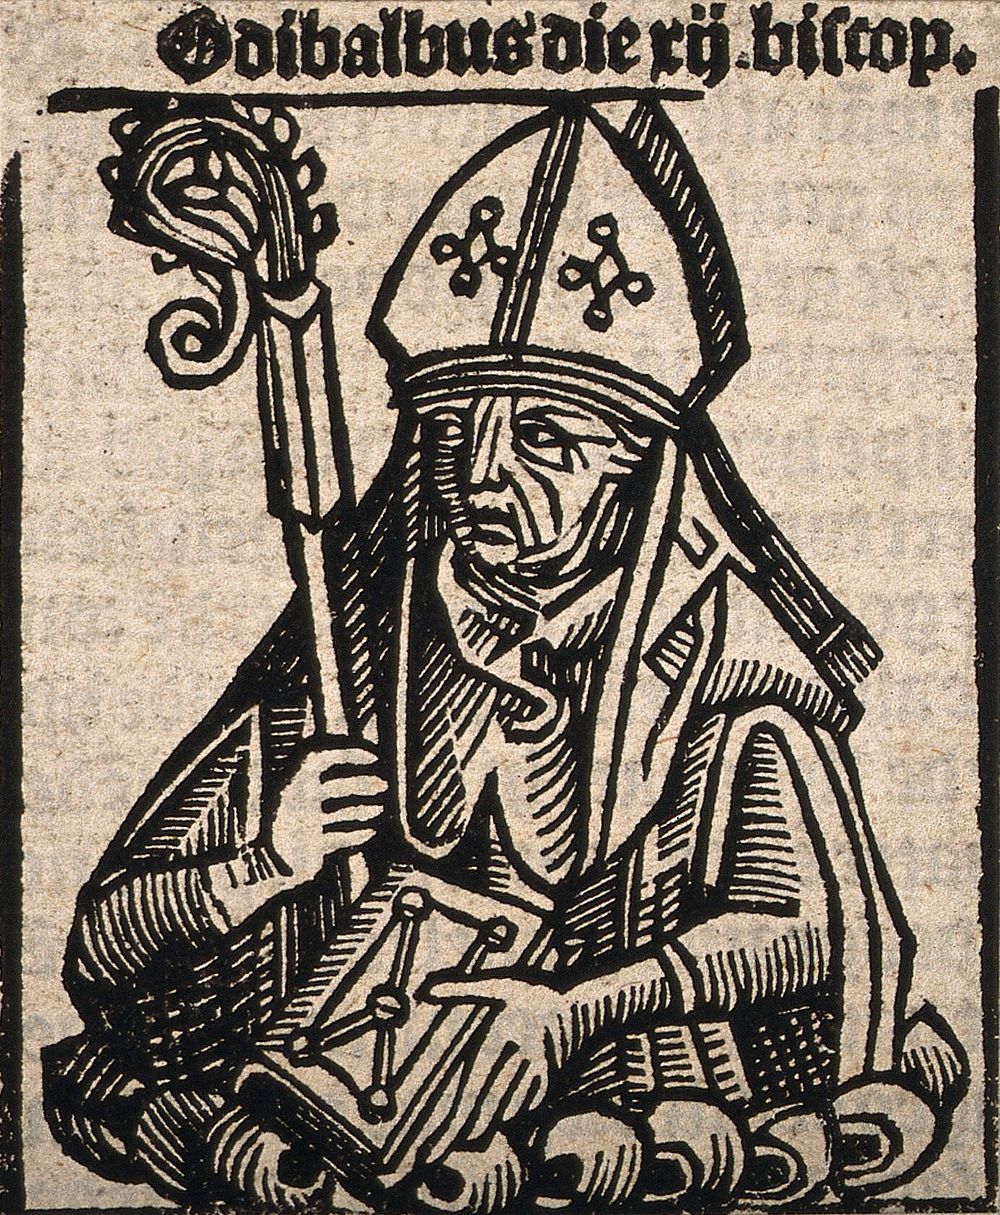 Bishop Odibaldus. Woodcut.